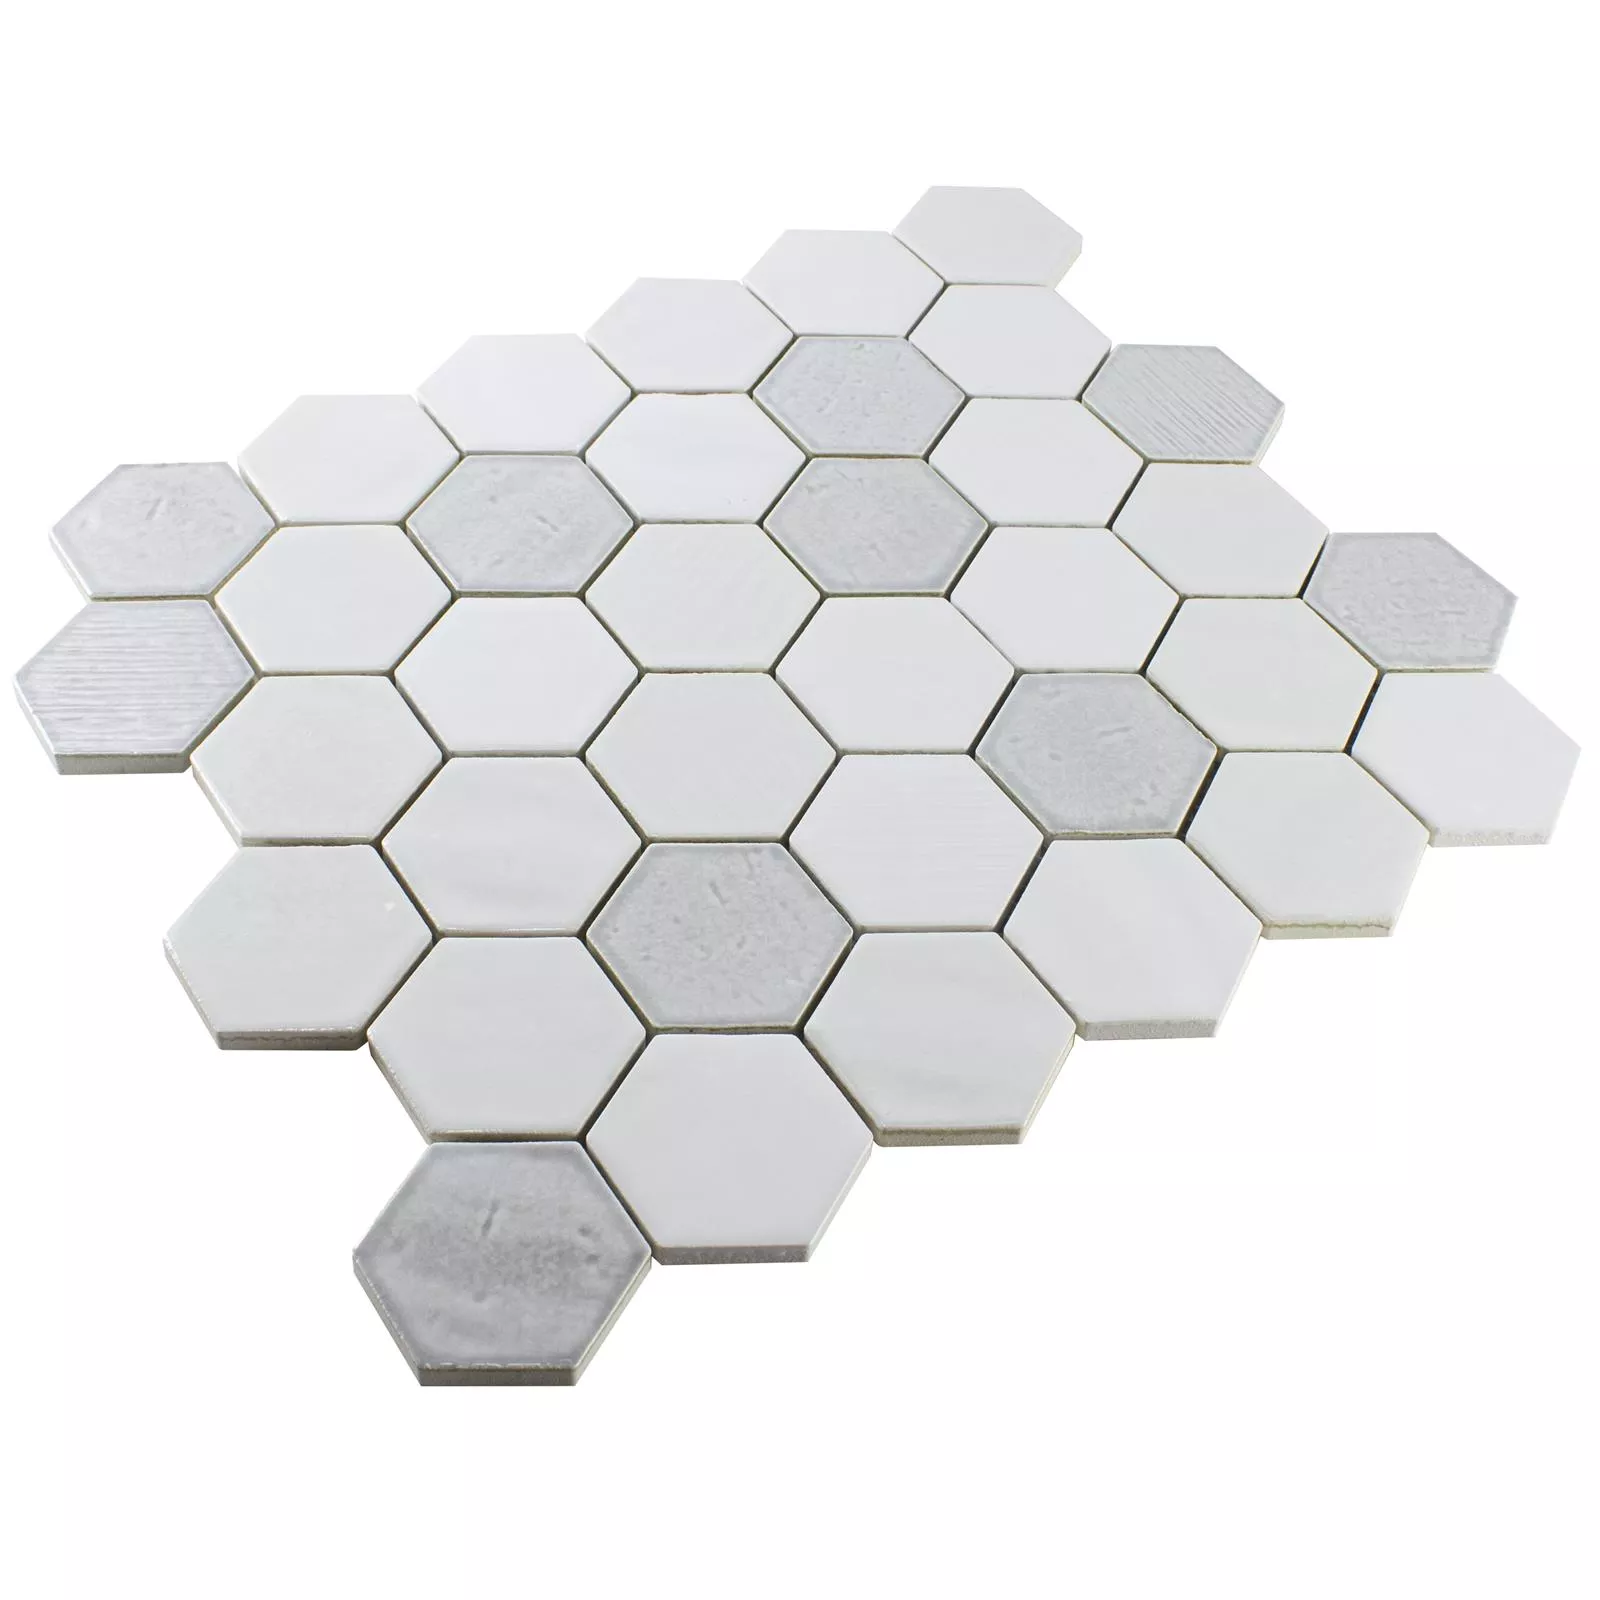 Fazekasság Mozaik Csempe Roseburg Hatszög Csillogó Fehér